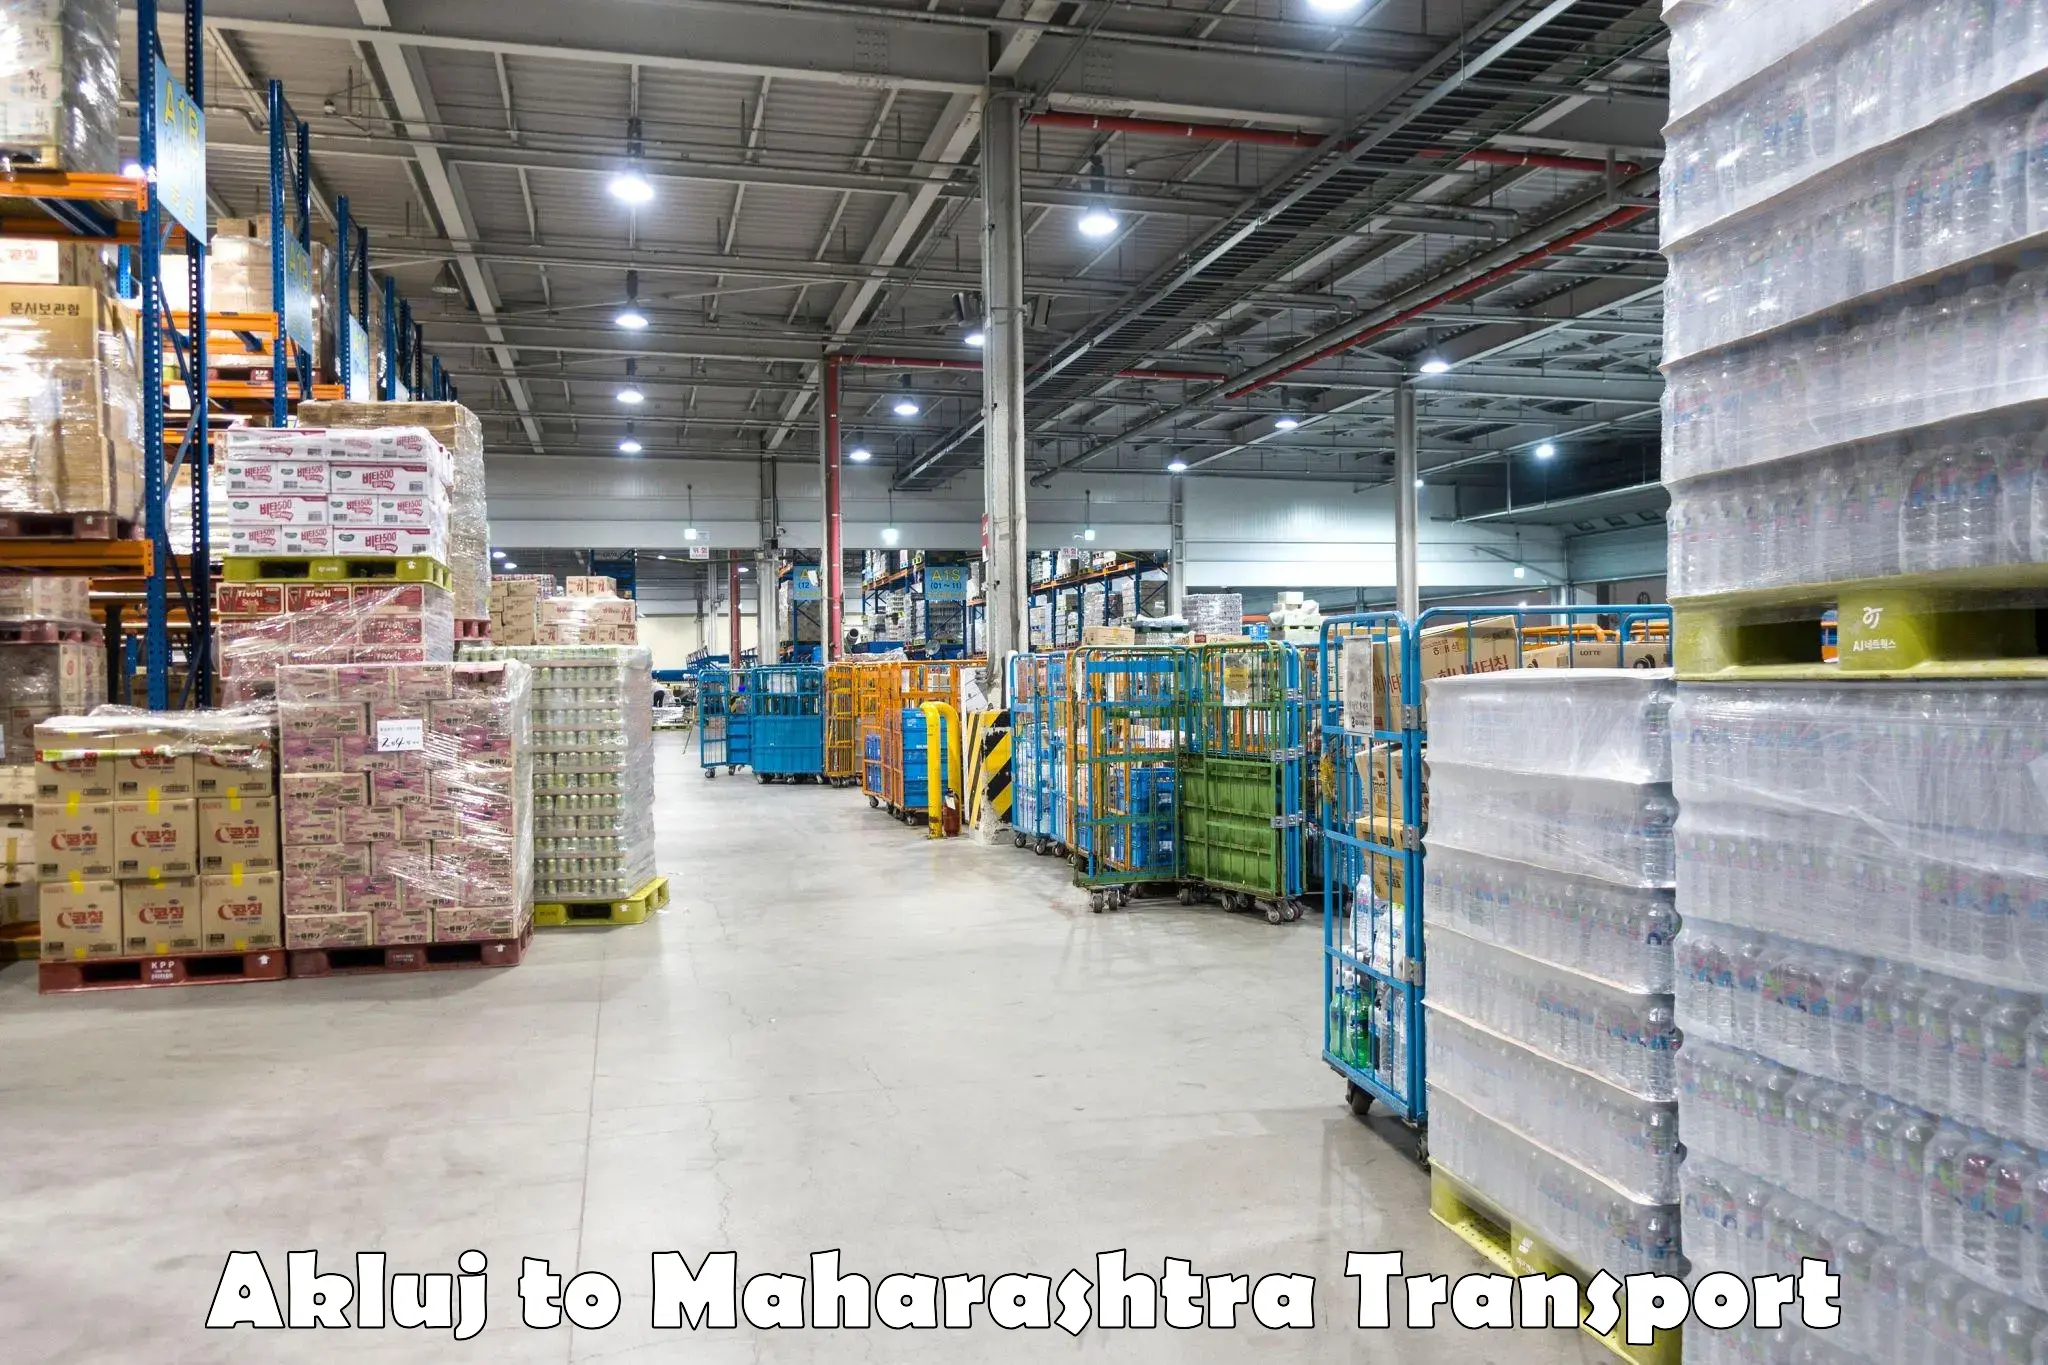 Shipping partner Akluj to Maharashtra